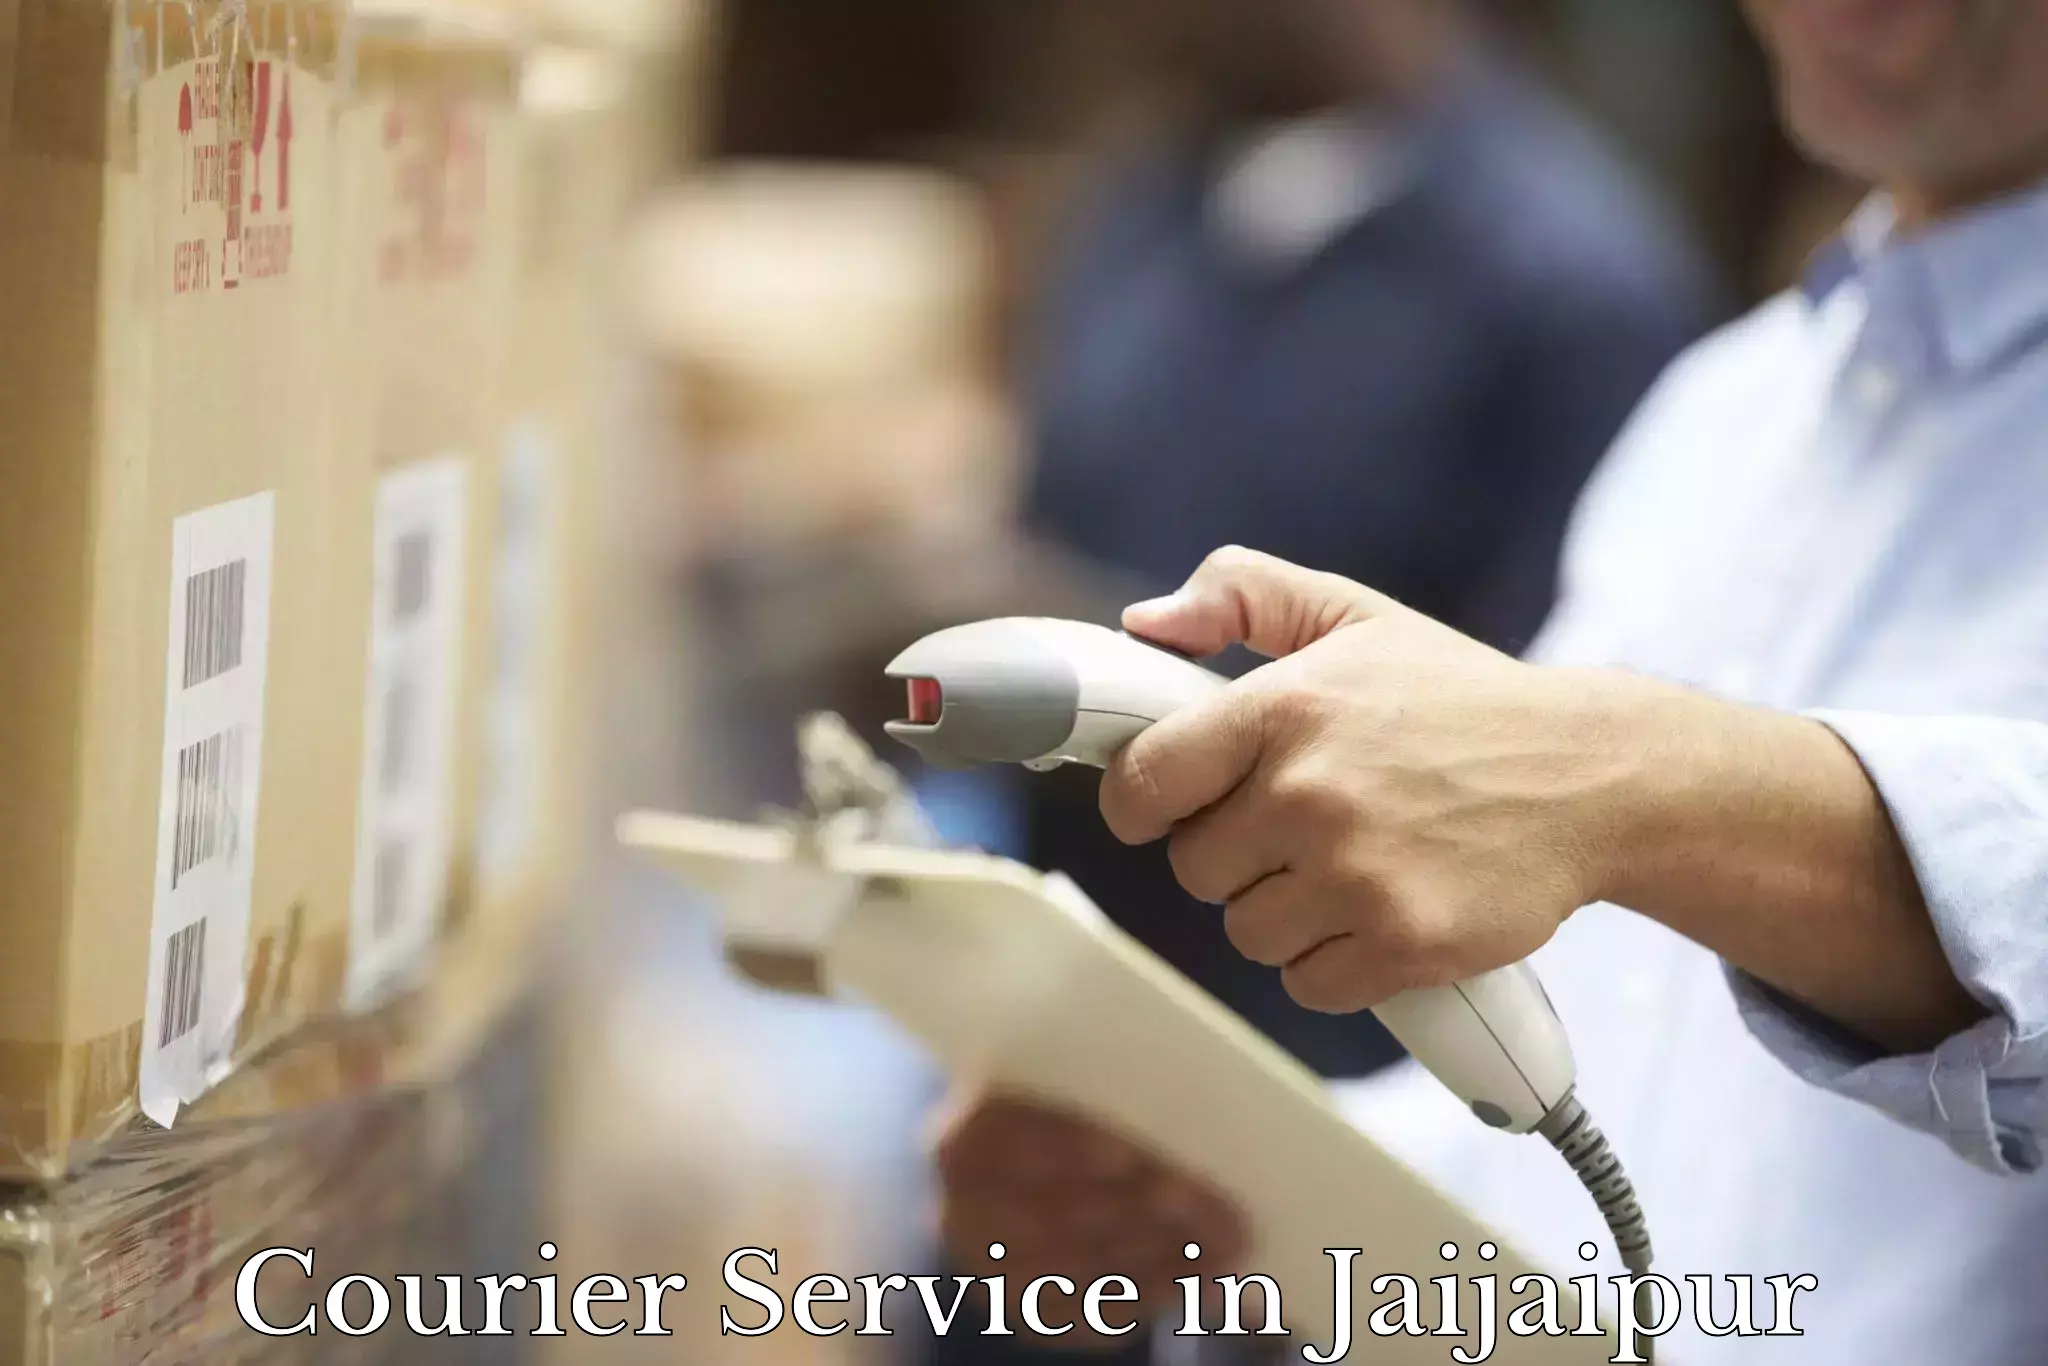 Versatile courier offerings in Jaijaipur